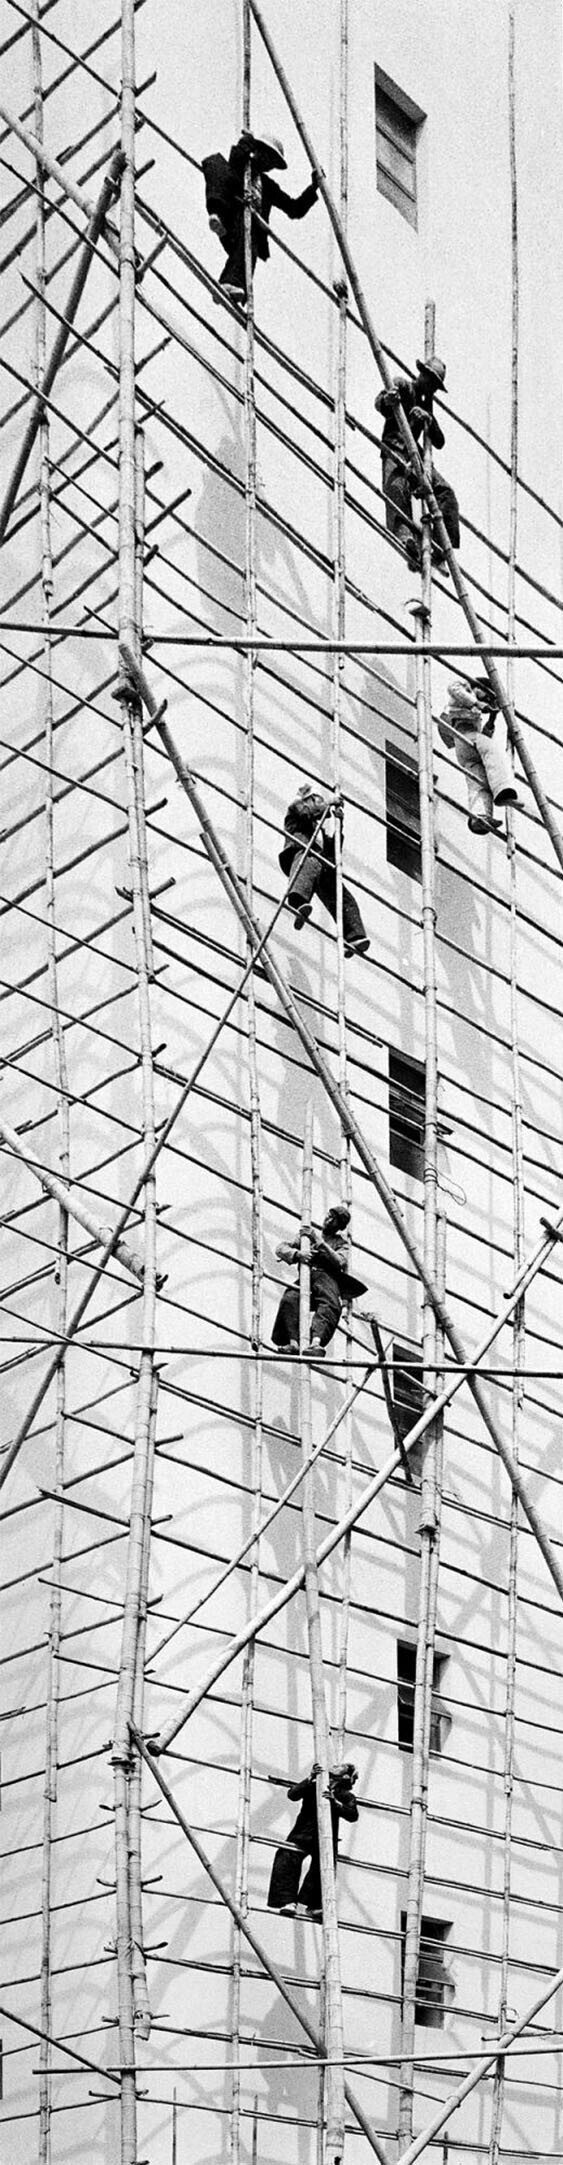 На этом фото рабочие ставят строительные леса для ремонта фасада высотного здания. Несущие столбы сделаны из бамбука. Гонконг. 1950-е годы. Фотограф Фан Хо